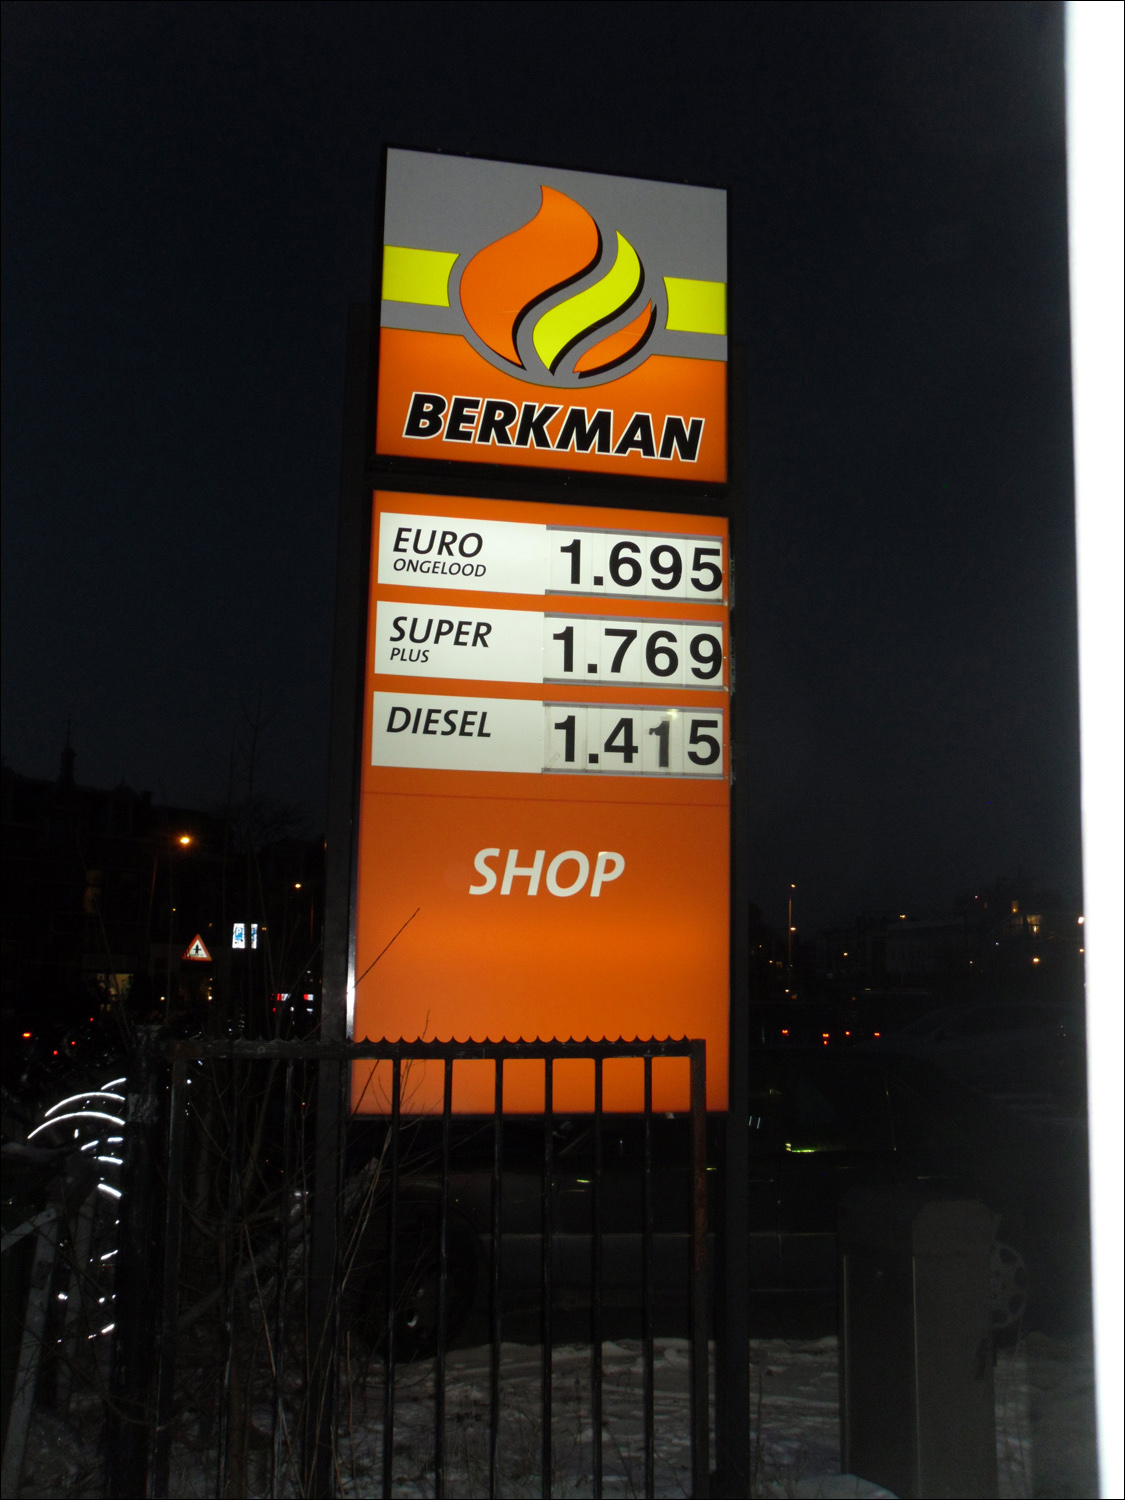 Price is euros per liter!